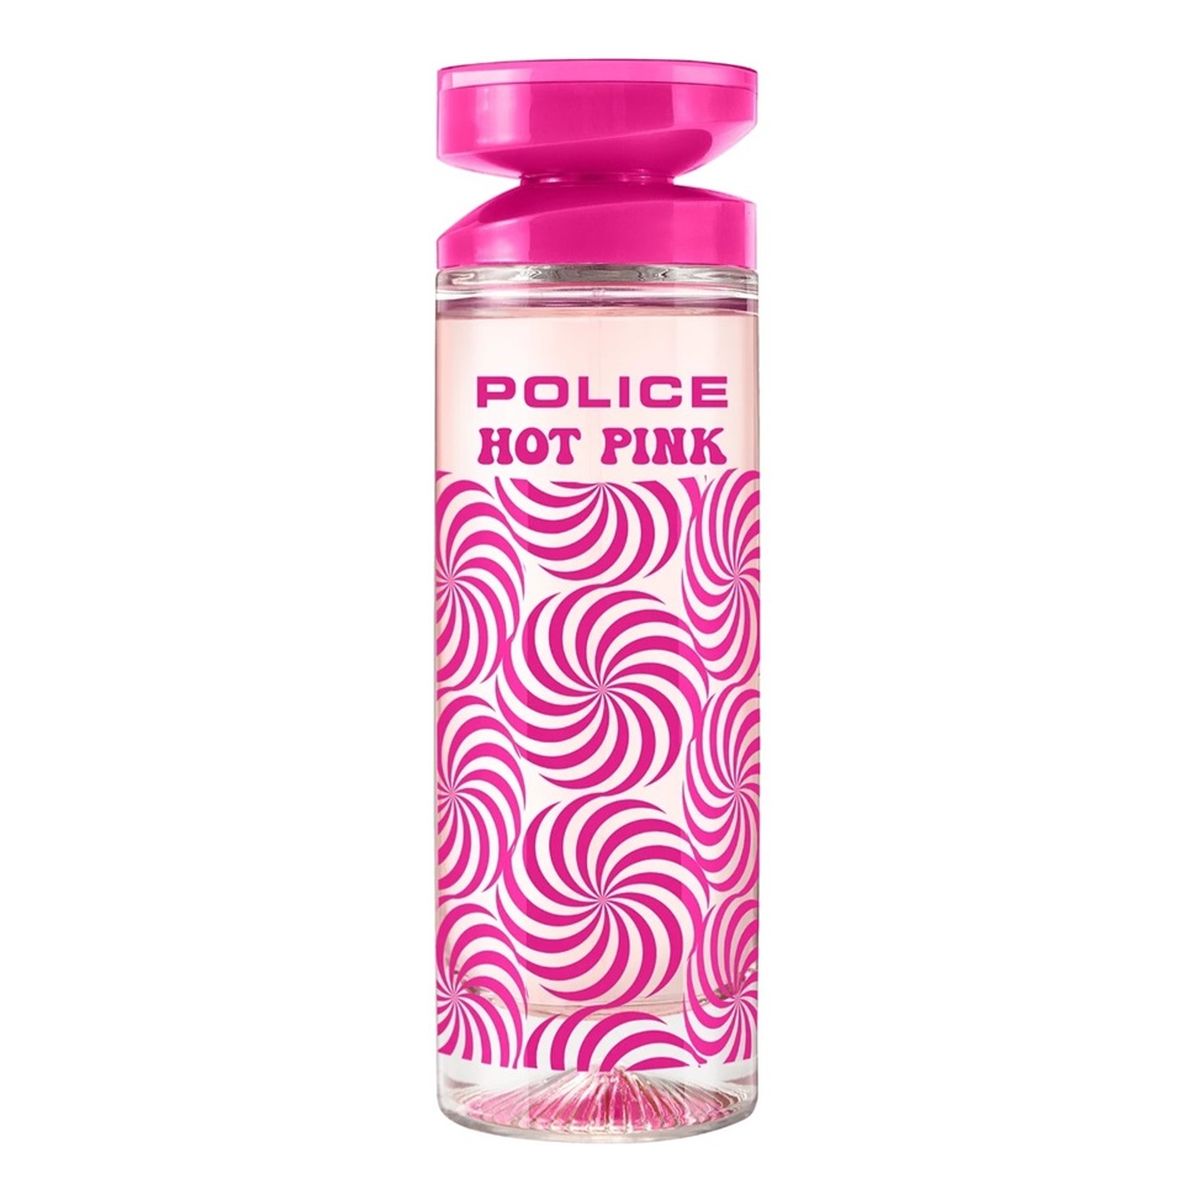 Police Hot Pink Woda toaletowa spray 100ml